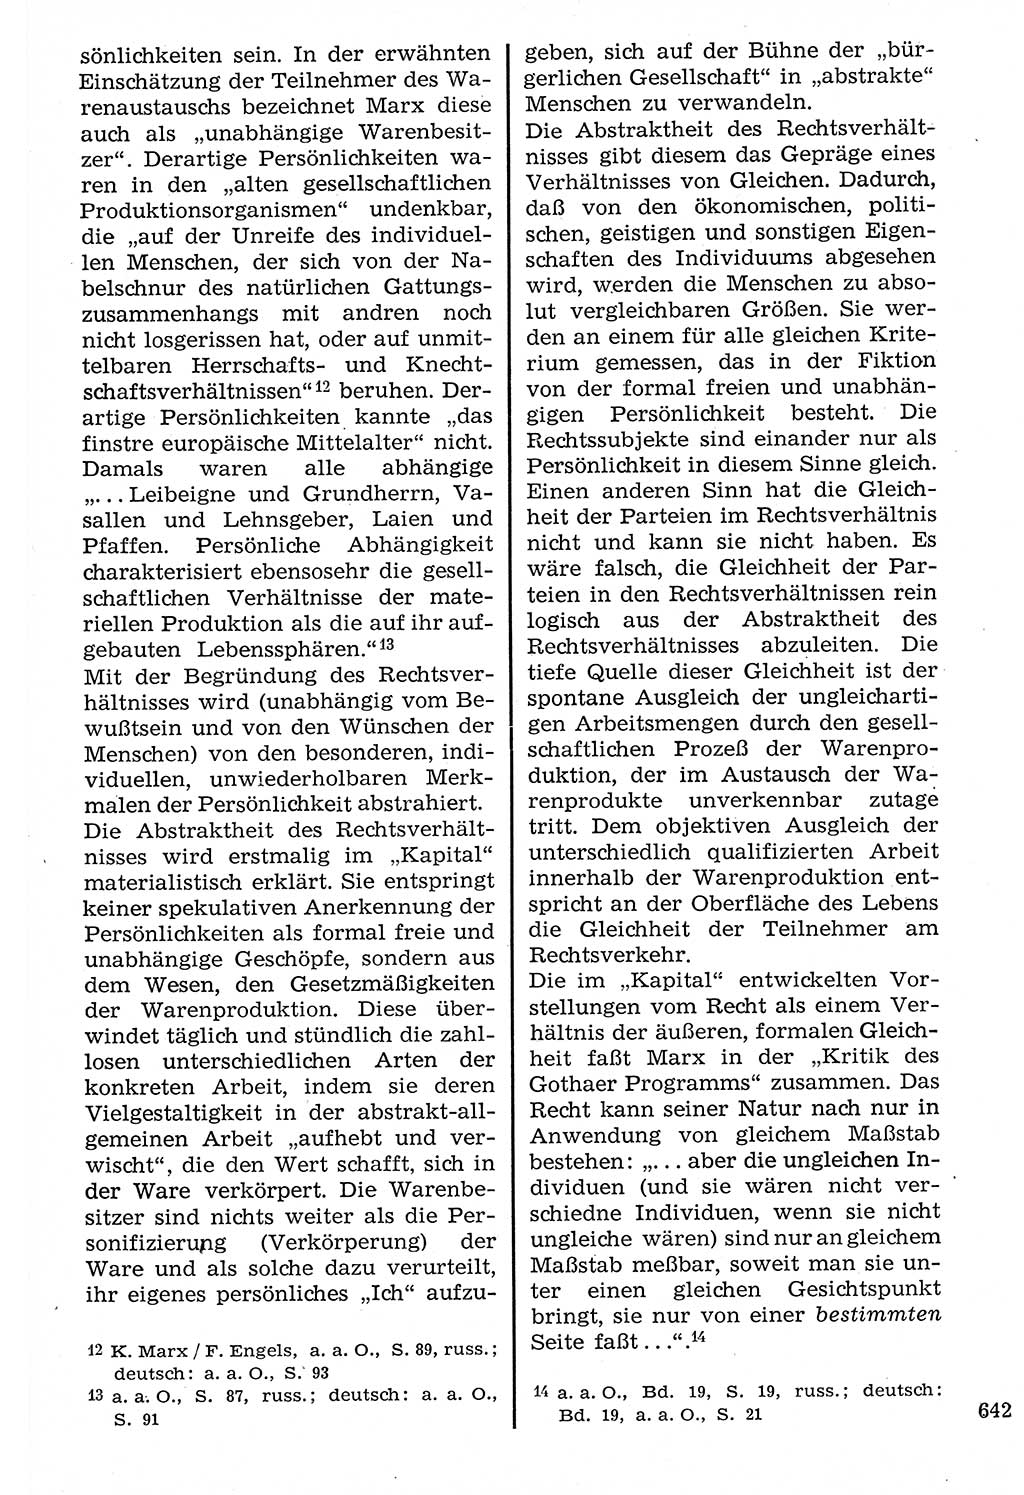 Staat und Recht (StuR), 17. Jahrgang [Deutsche Demokratische Republik (DDR)] 1968, Seite 642 (StuR DDR 1968, S. 642)